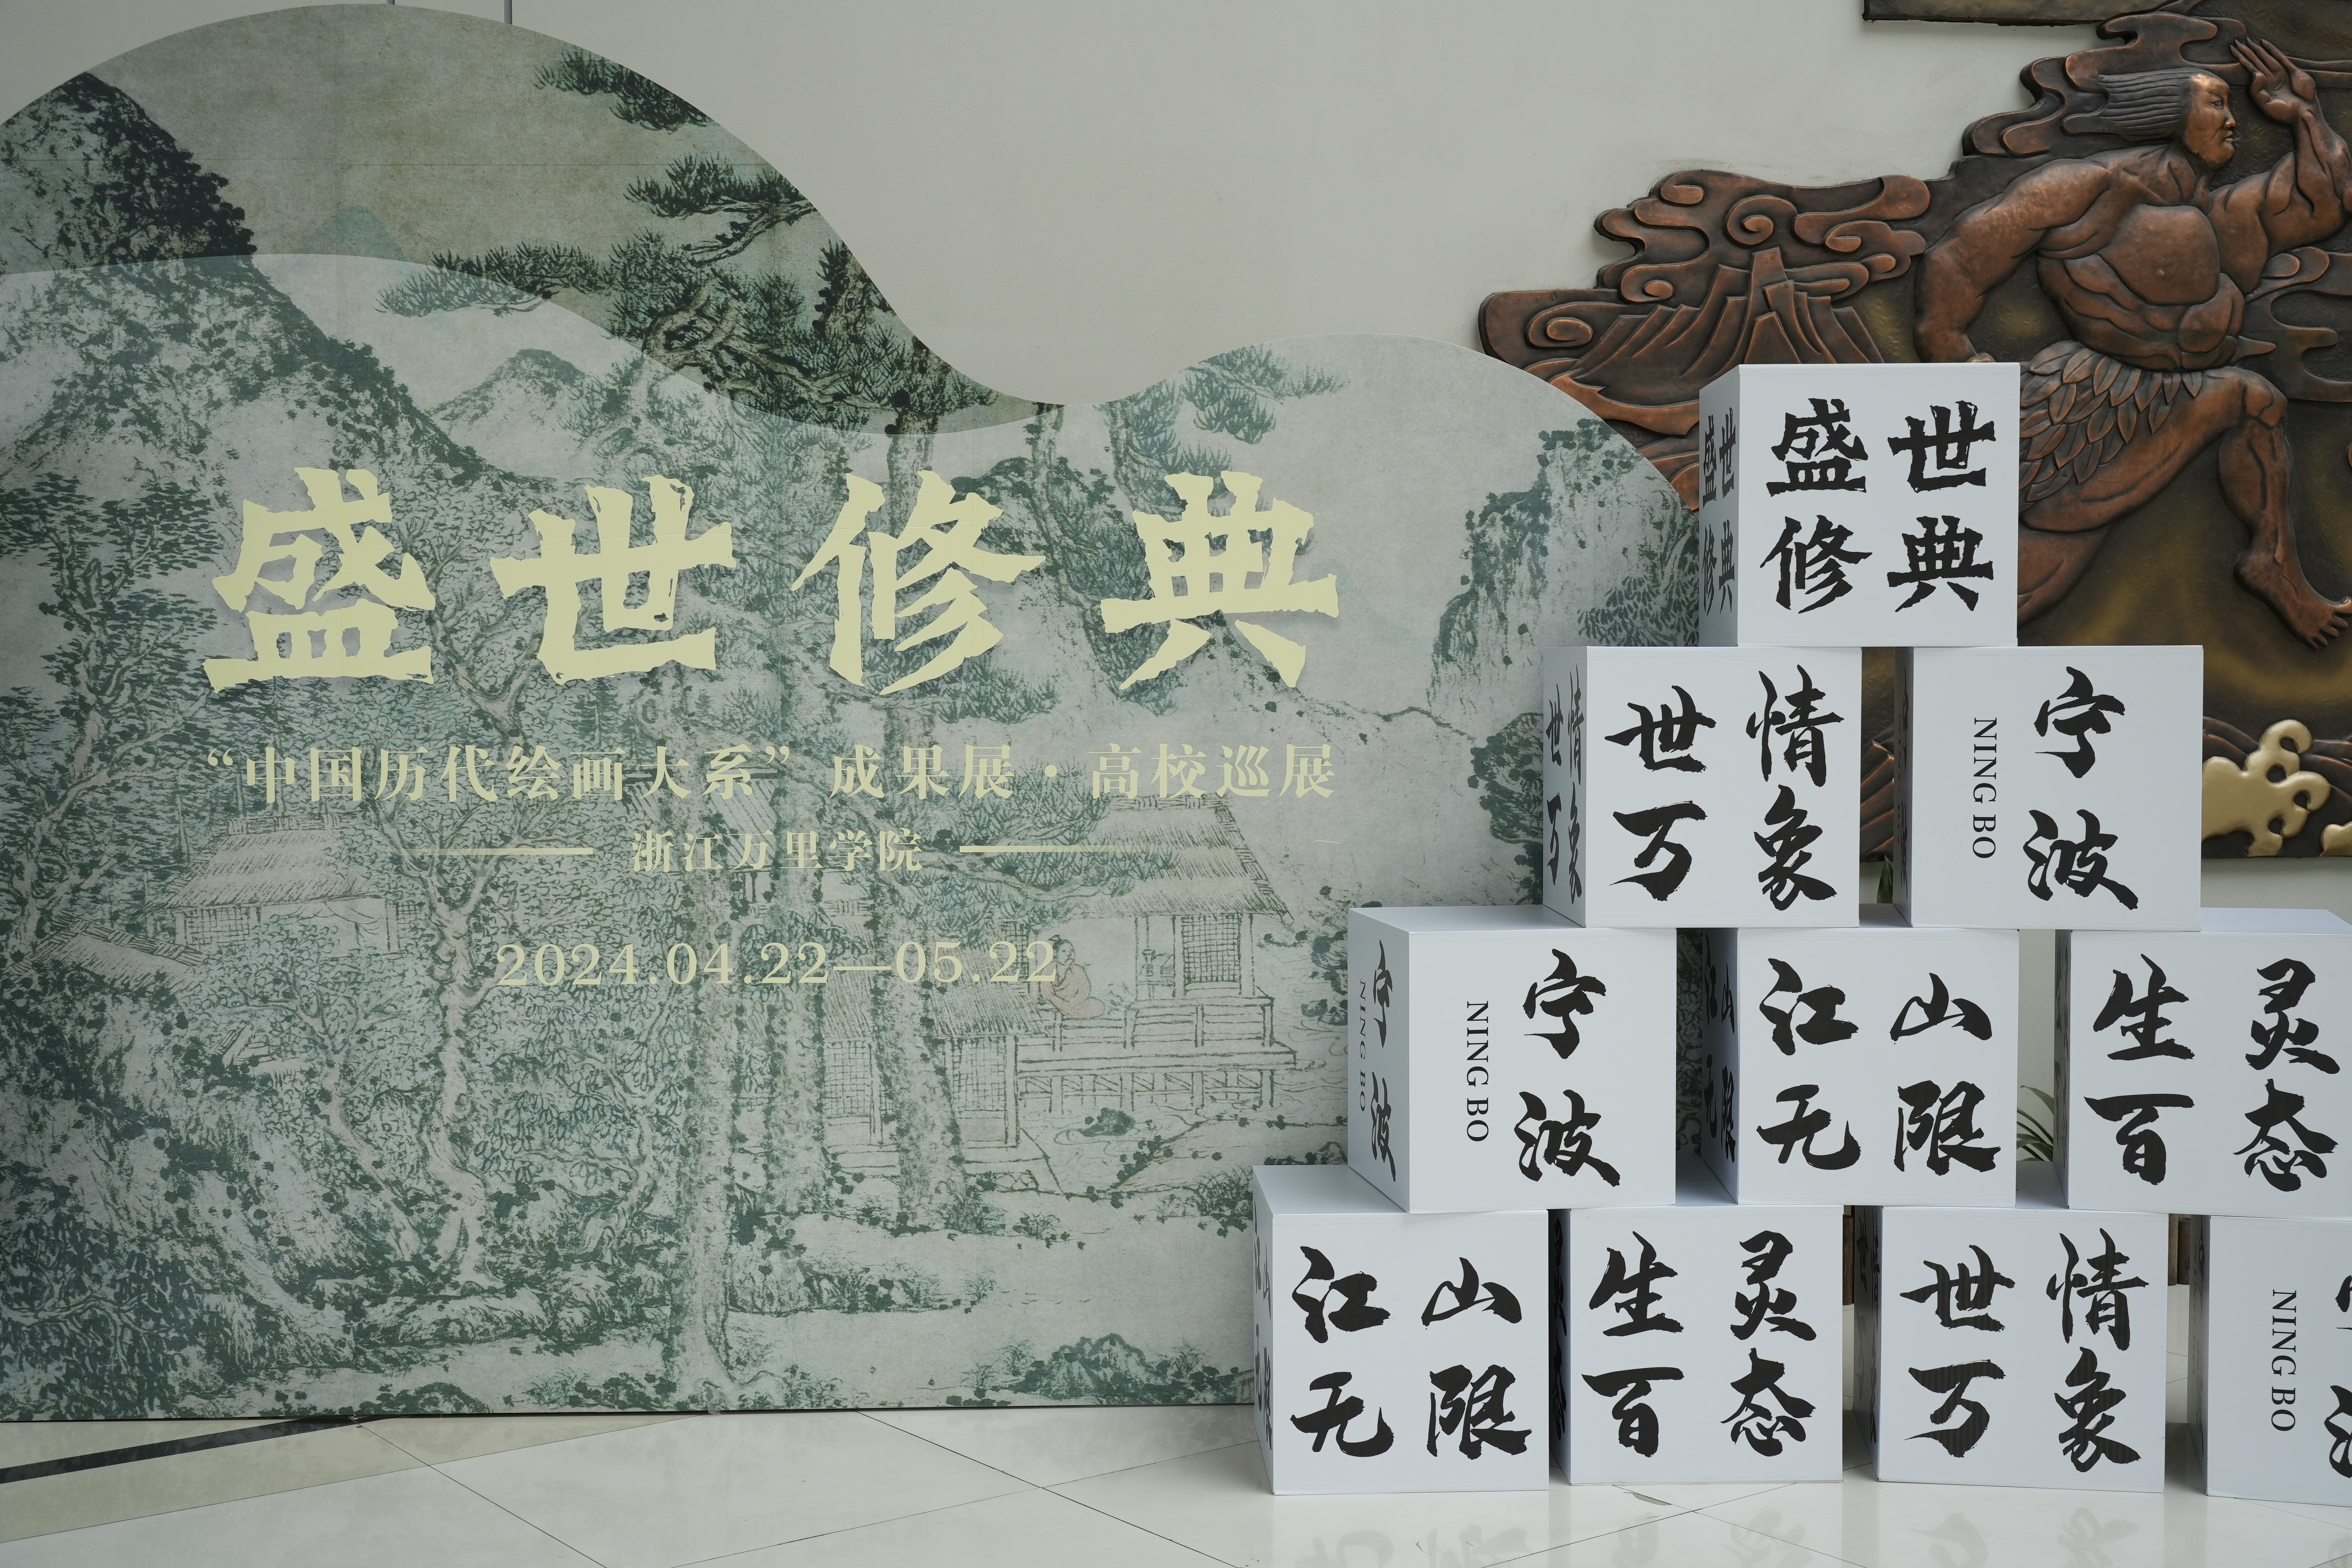 盛世修典“中国历代绘画大系”成果展·高校巡展在浙江万里学院展出